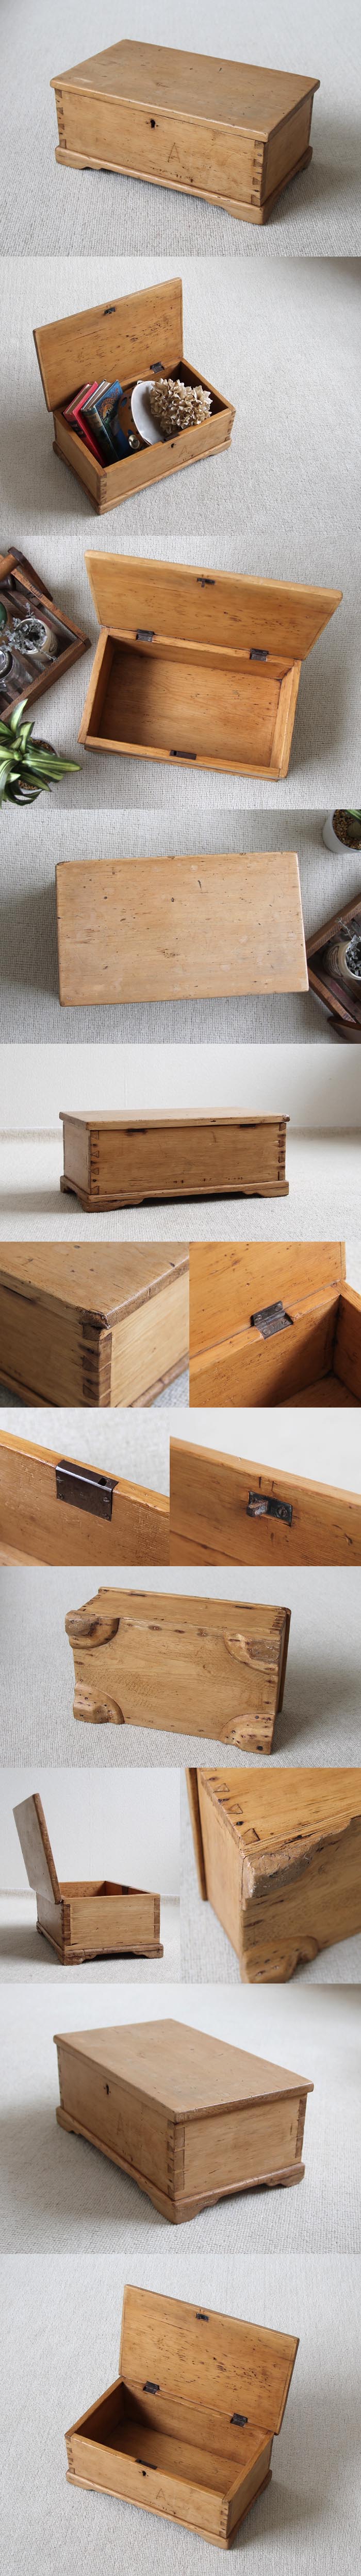 イギリス アンティーク オールドパインボックス/木箱/ツールBOX/インテリア【古い木肌が素敵なアイテム】N-891